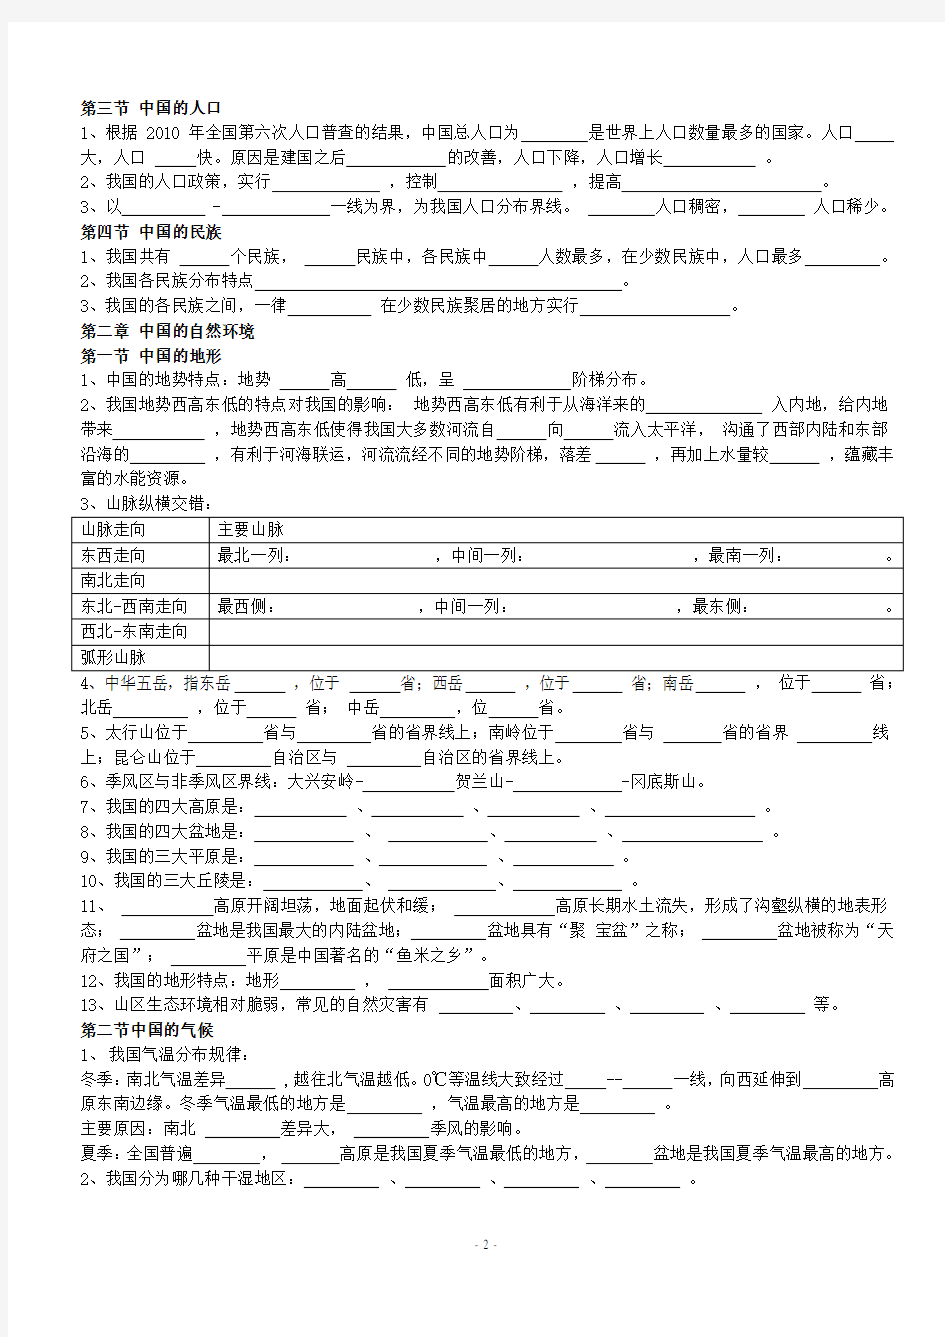 八年级上册湘教版地理全册复习提纲(填空).pdf